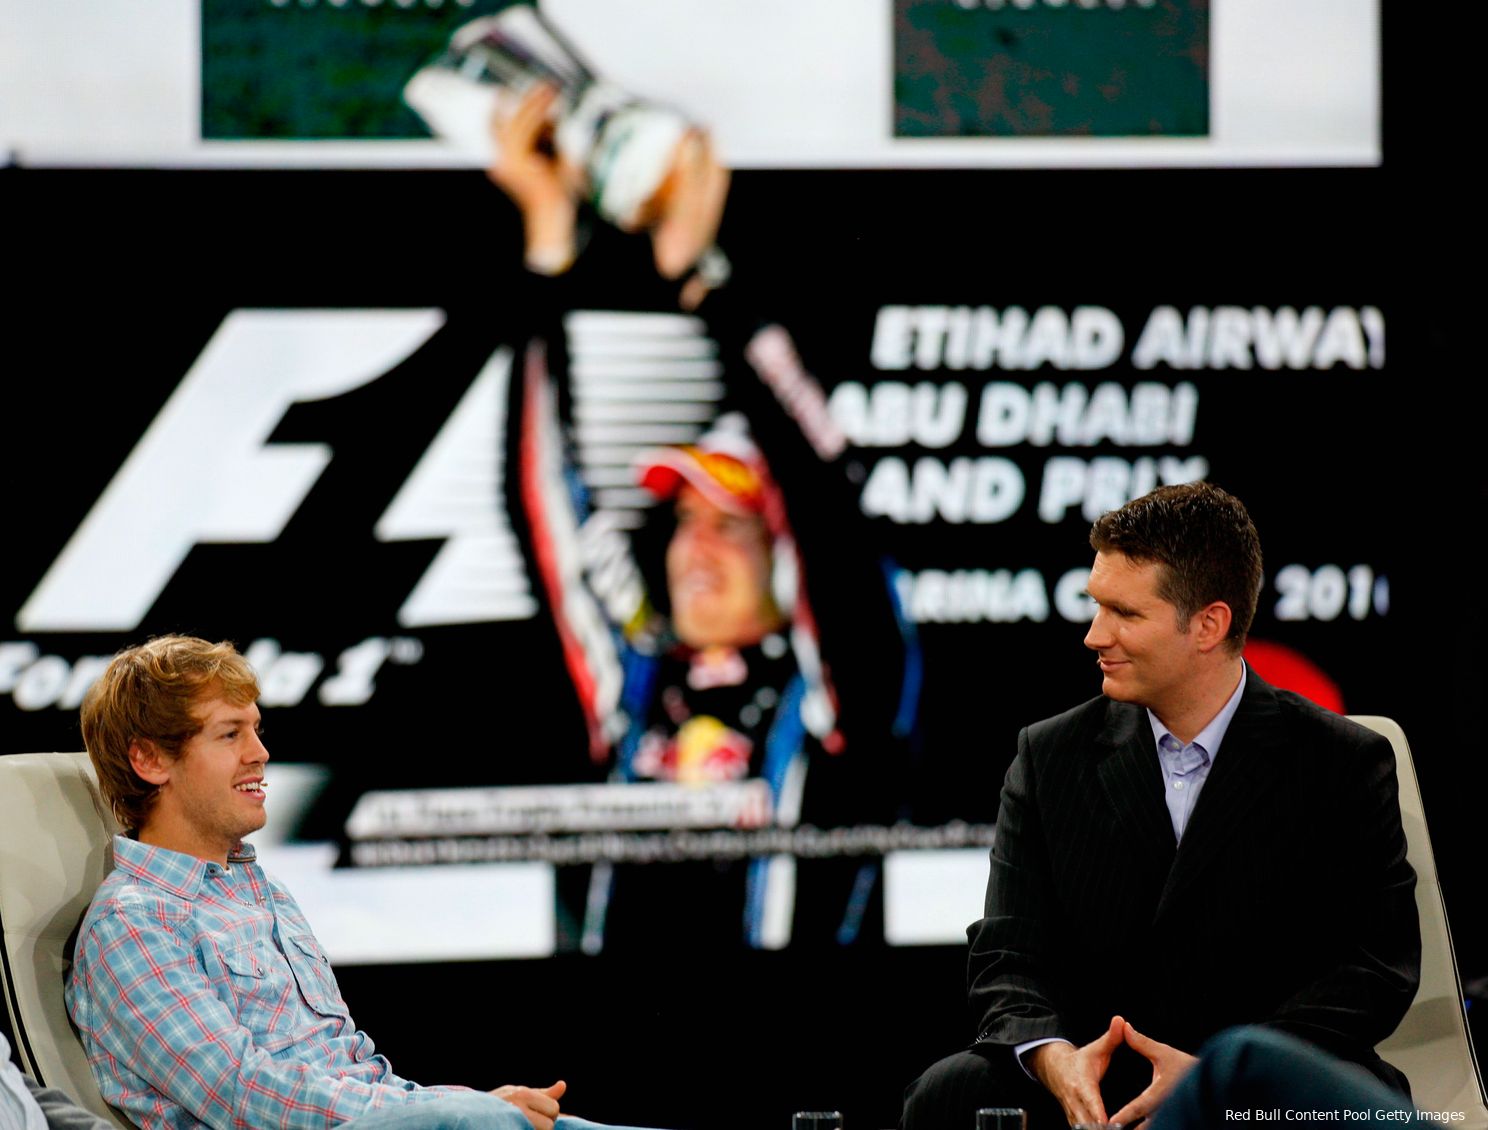 Gaat Verstappen het succes van Vettel en Red Bull uit 2010 achterna?